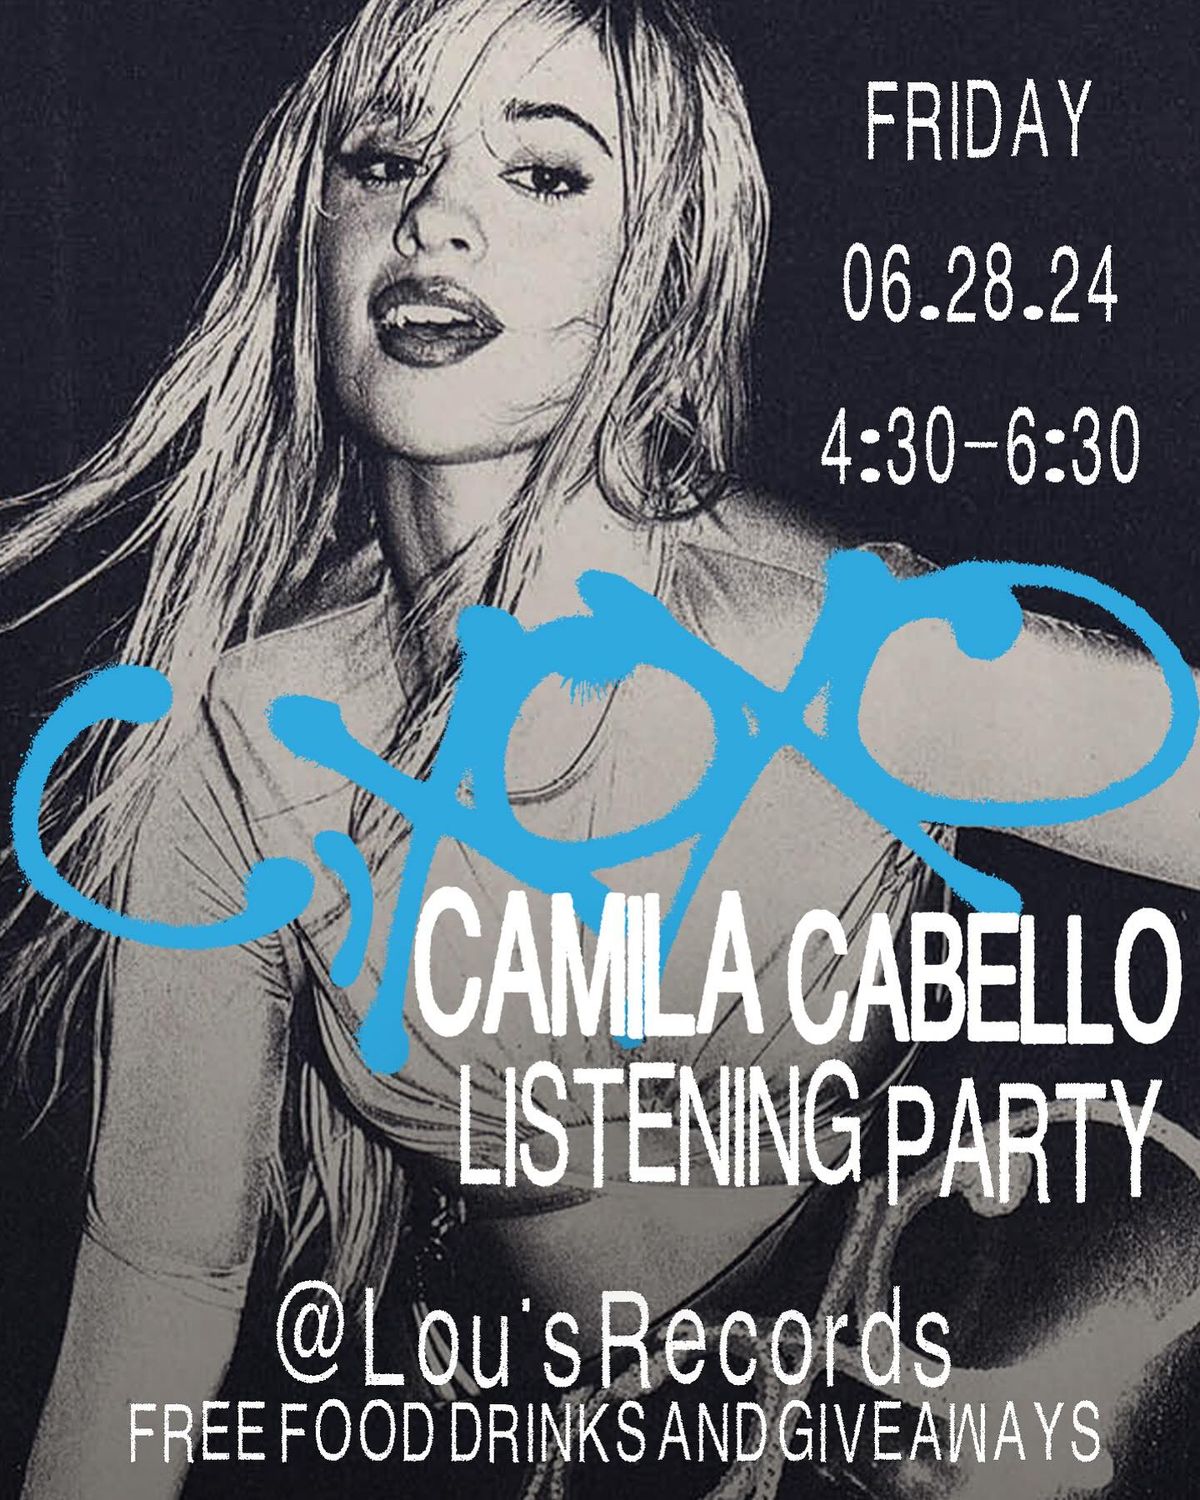 Camila Cabello Listening Party